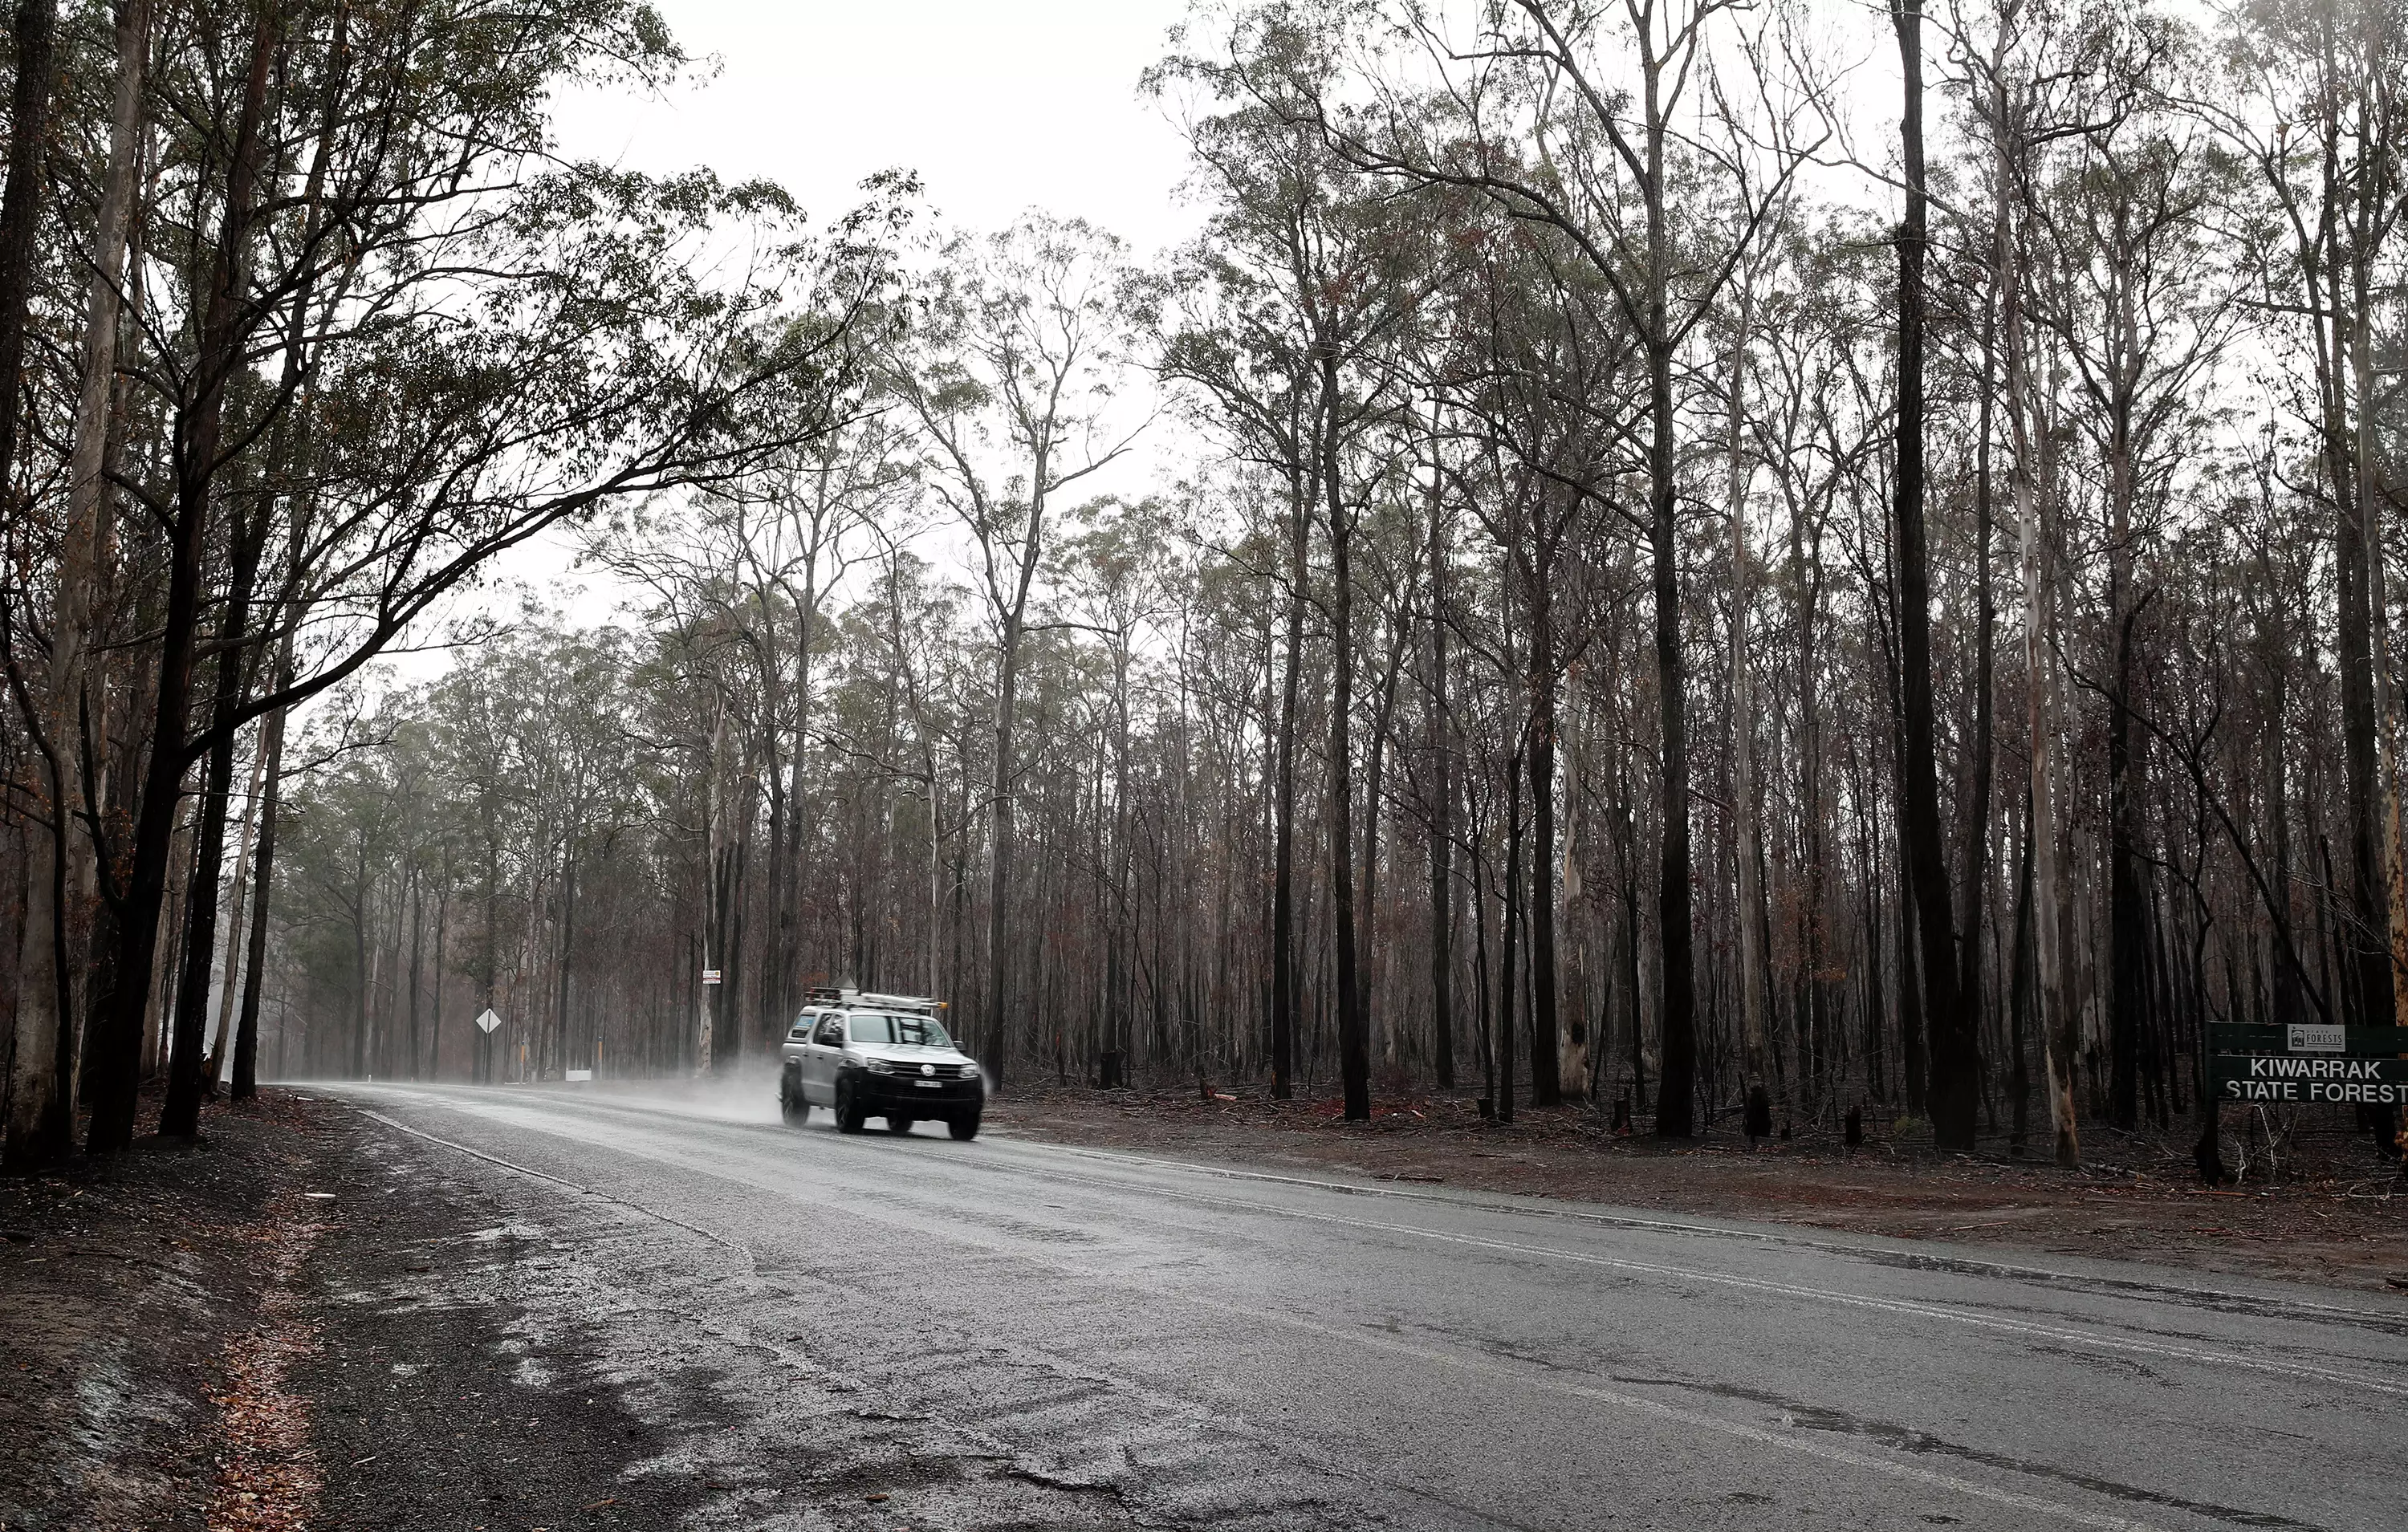 Rain recently fell in Taree, NSW.